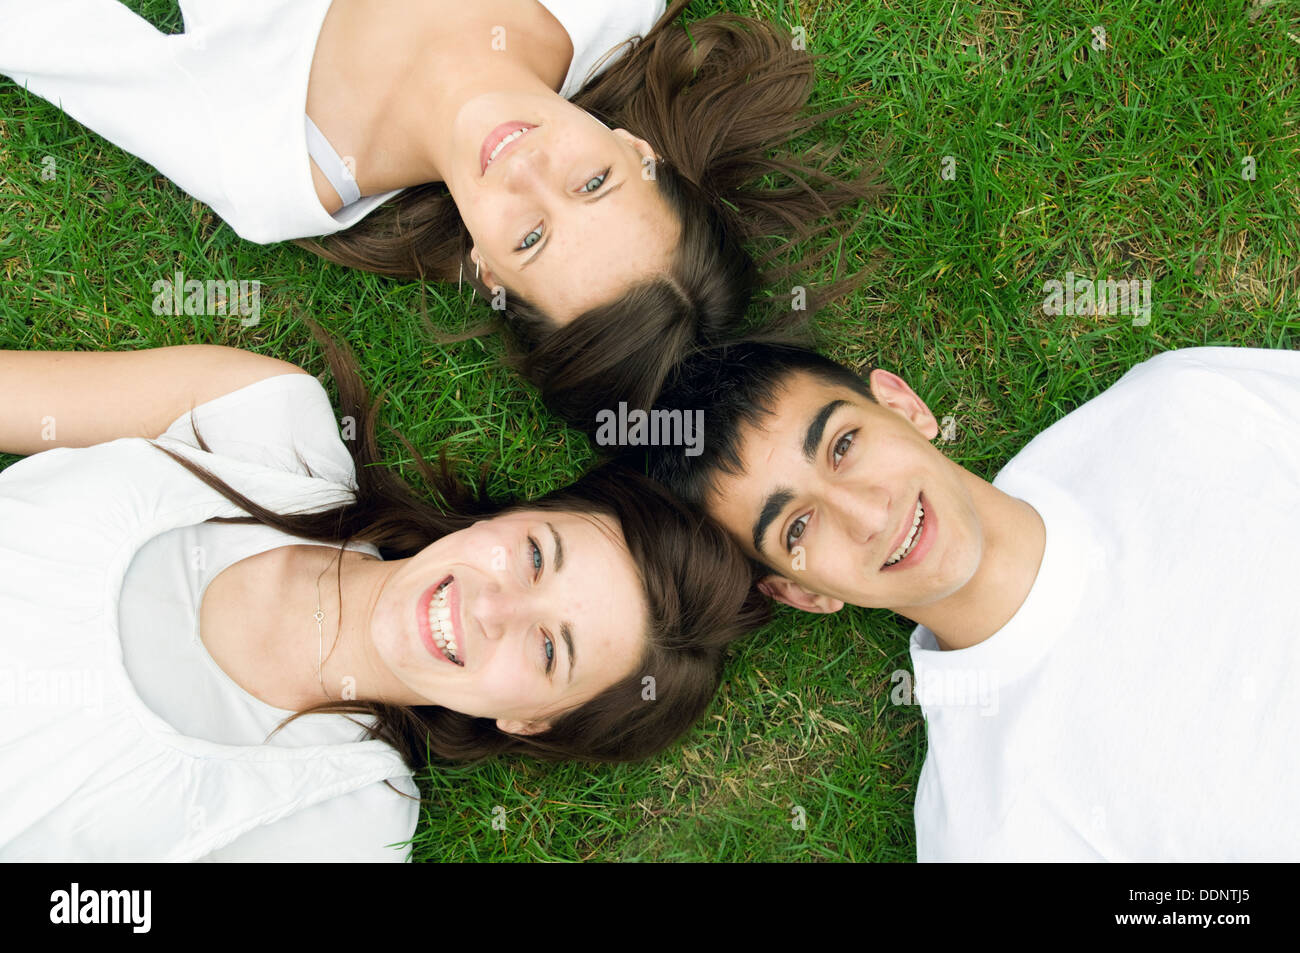 Tres jóvenes amigos feliz acostado juntos Foto de stock